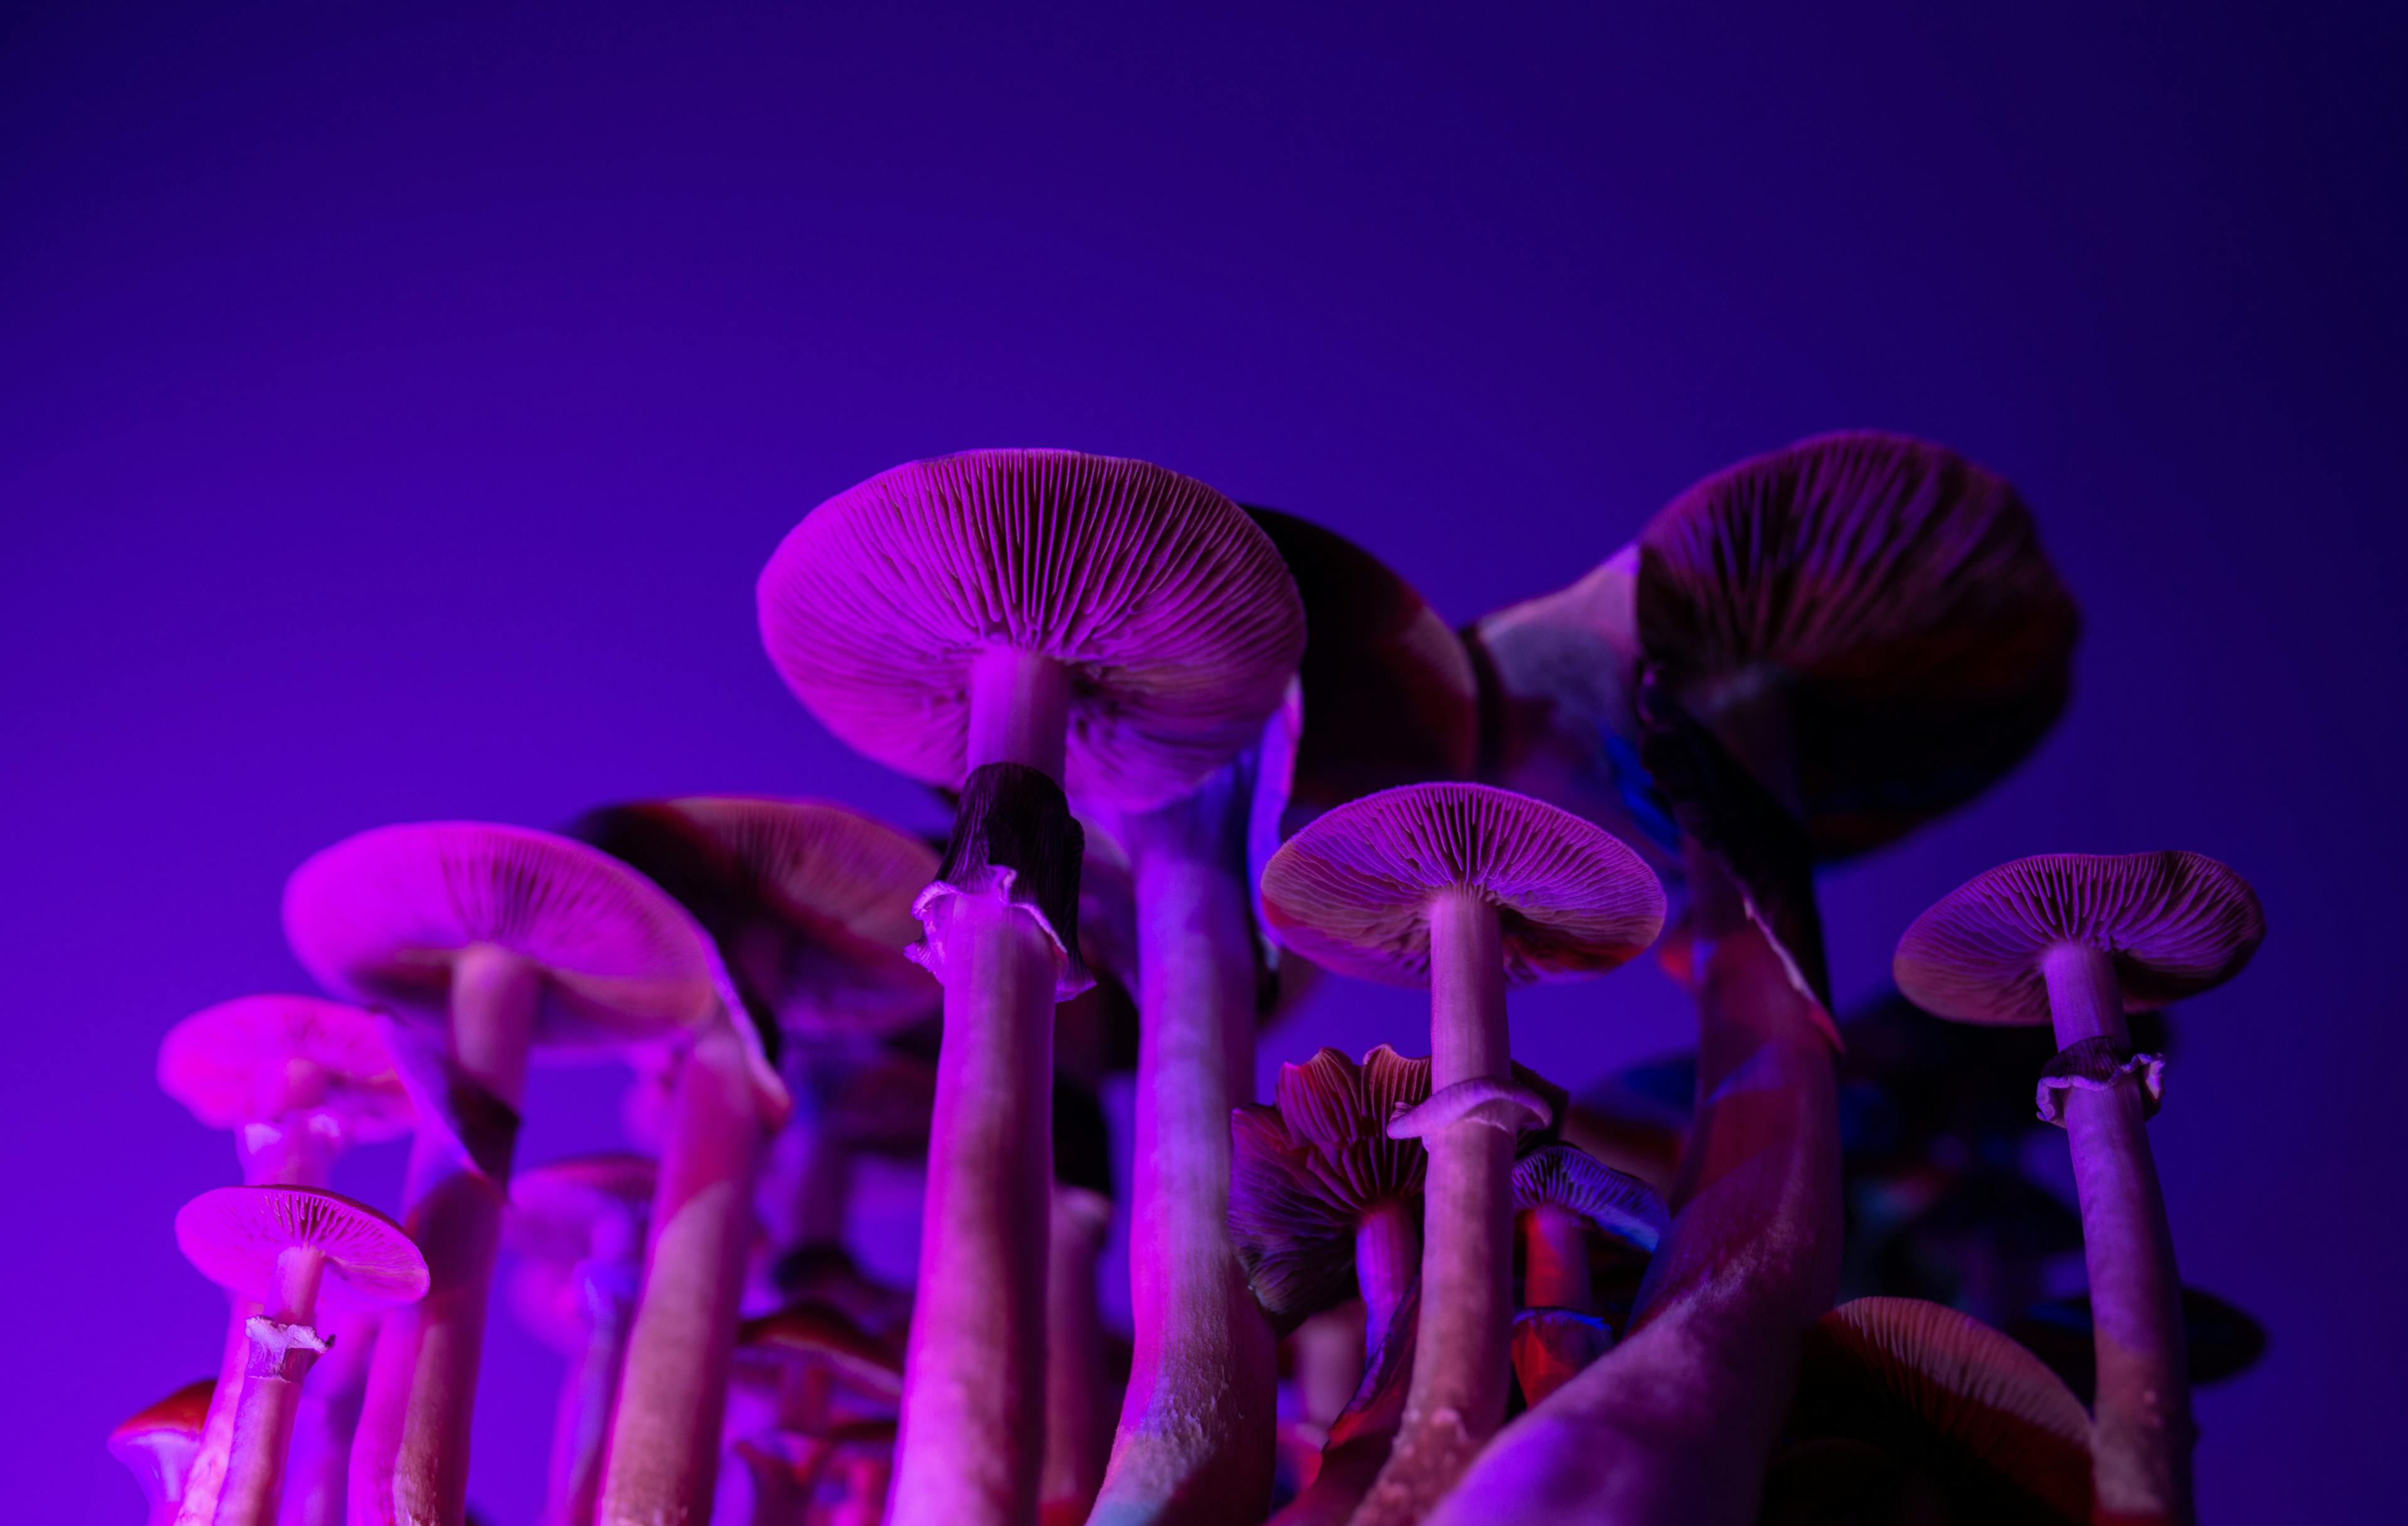 Psilocybin mushrooms in purple light / YARphotographer - stock.adobe.com